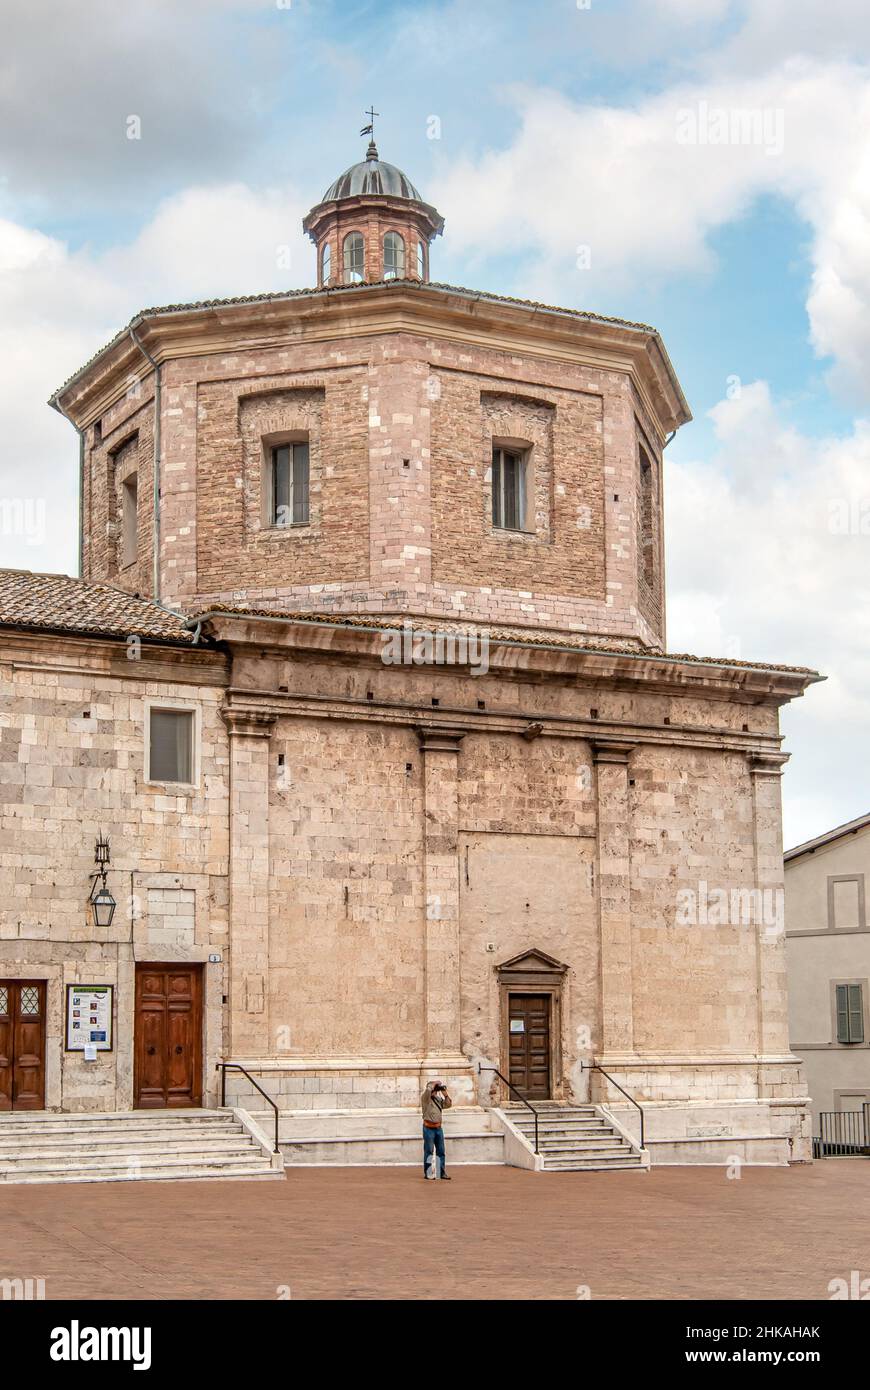 Caio Melisso opera house in Spoleto, Umbria, Italy Stock Photo